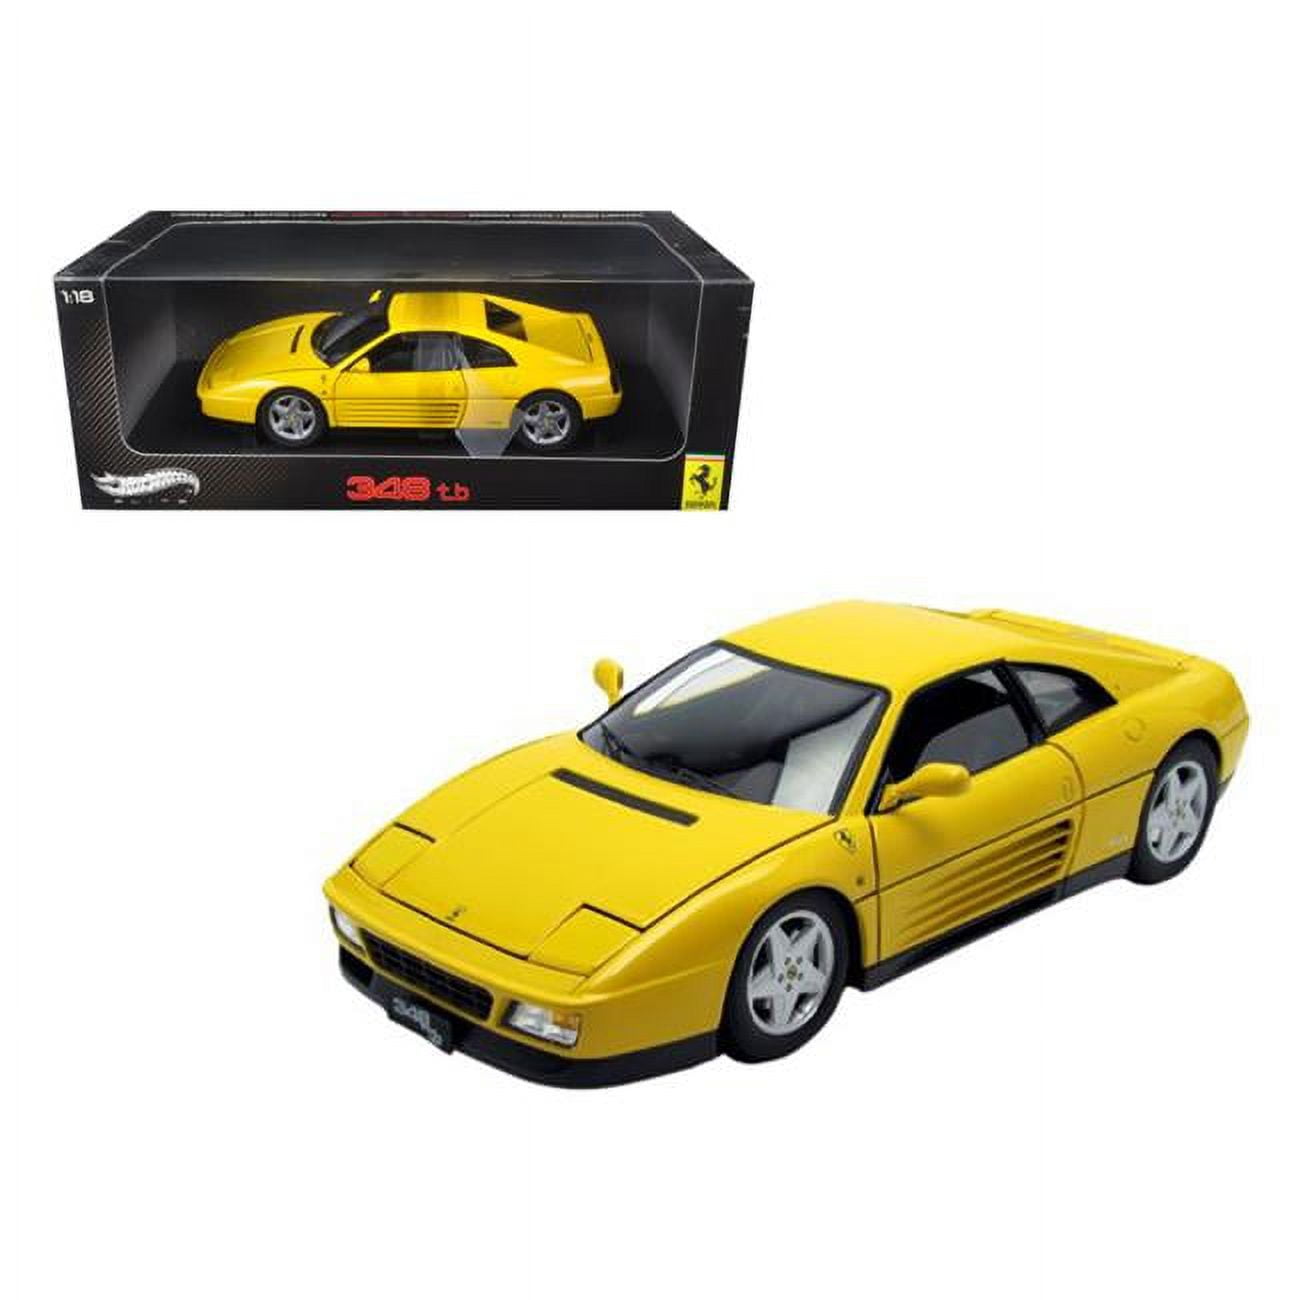 V7437 1 By 18 Scale Diecast 1989 Ferrari 348 Tb Yellow Elite Edition Model Car